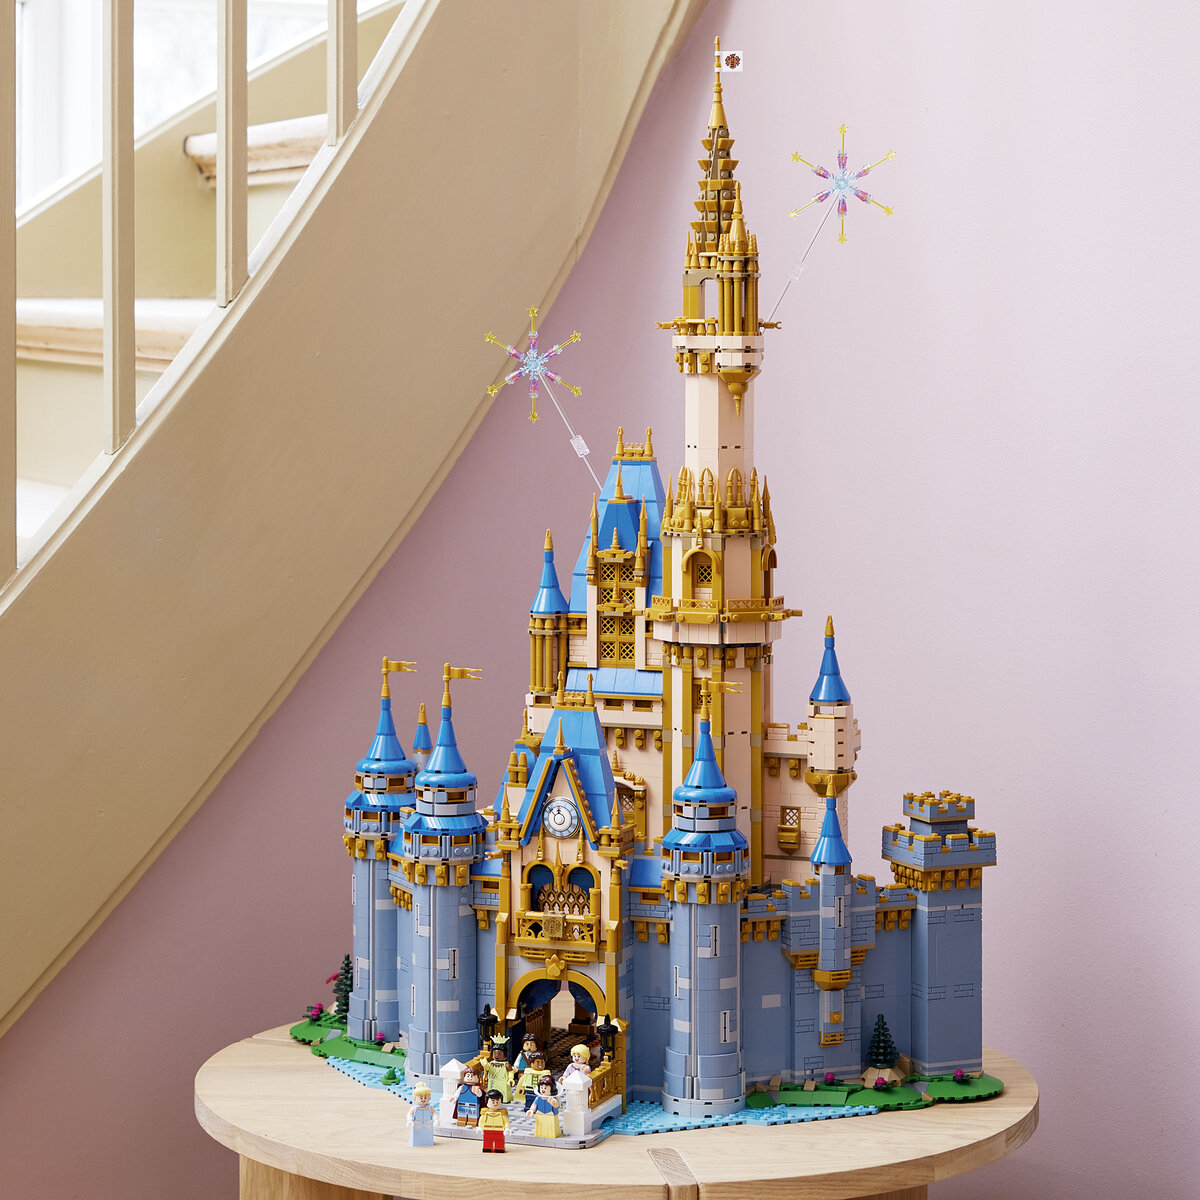 La tour de Raiponce 43187 | Disney™ | Boutique LEGO® officielle FR